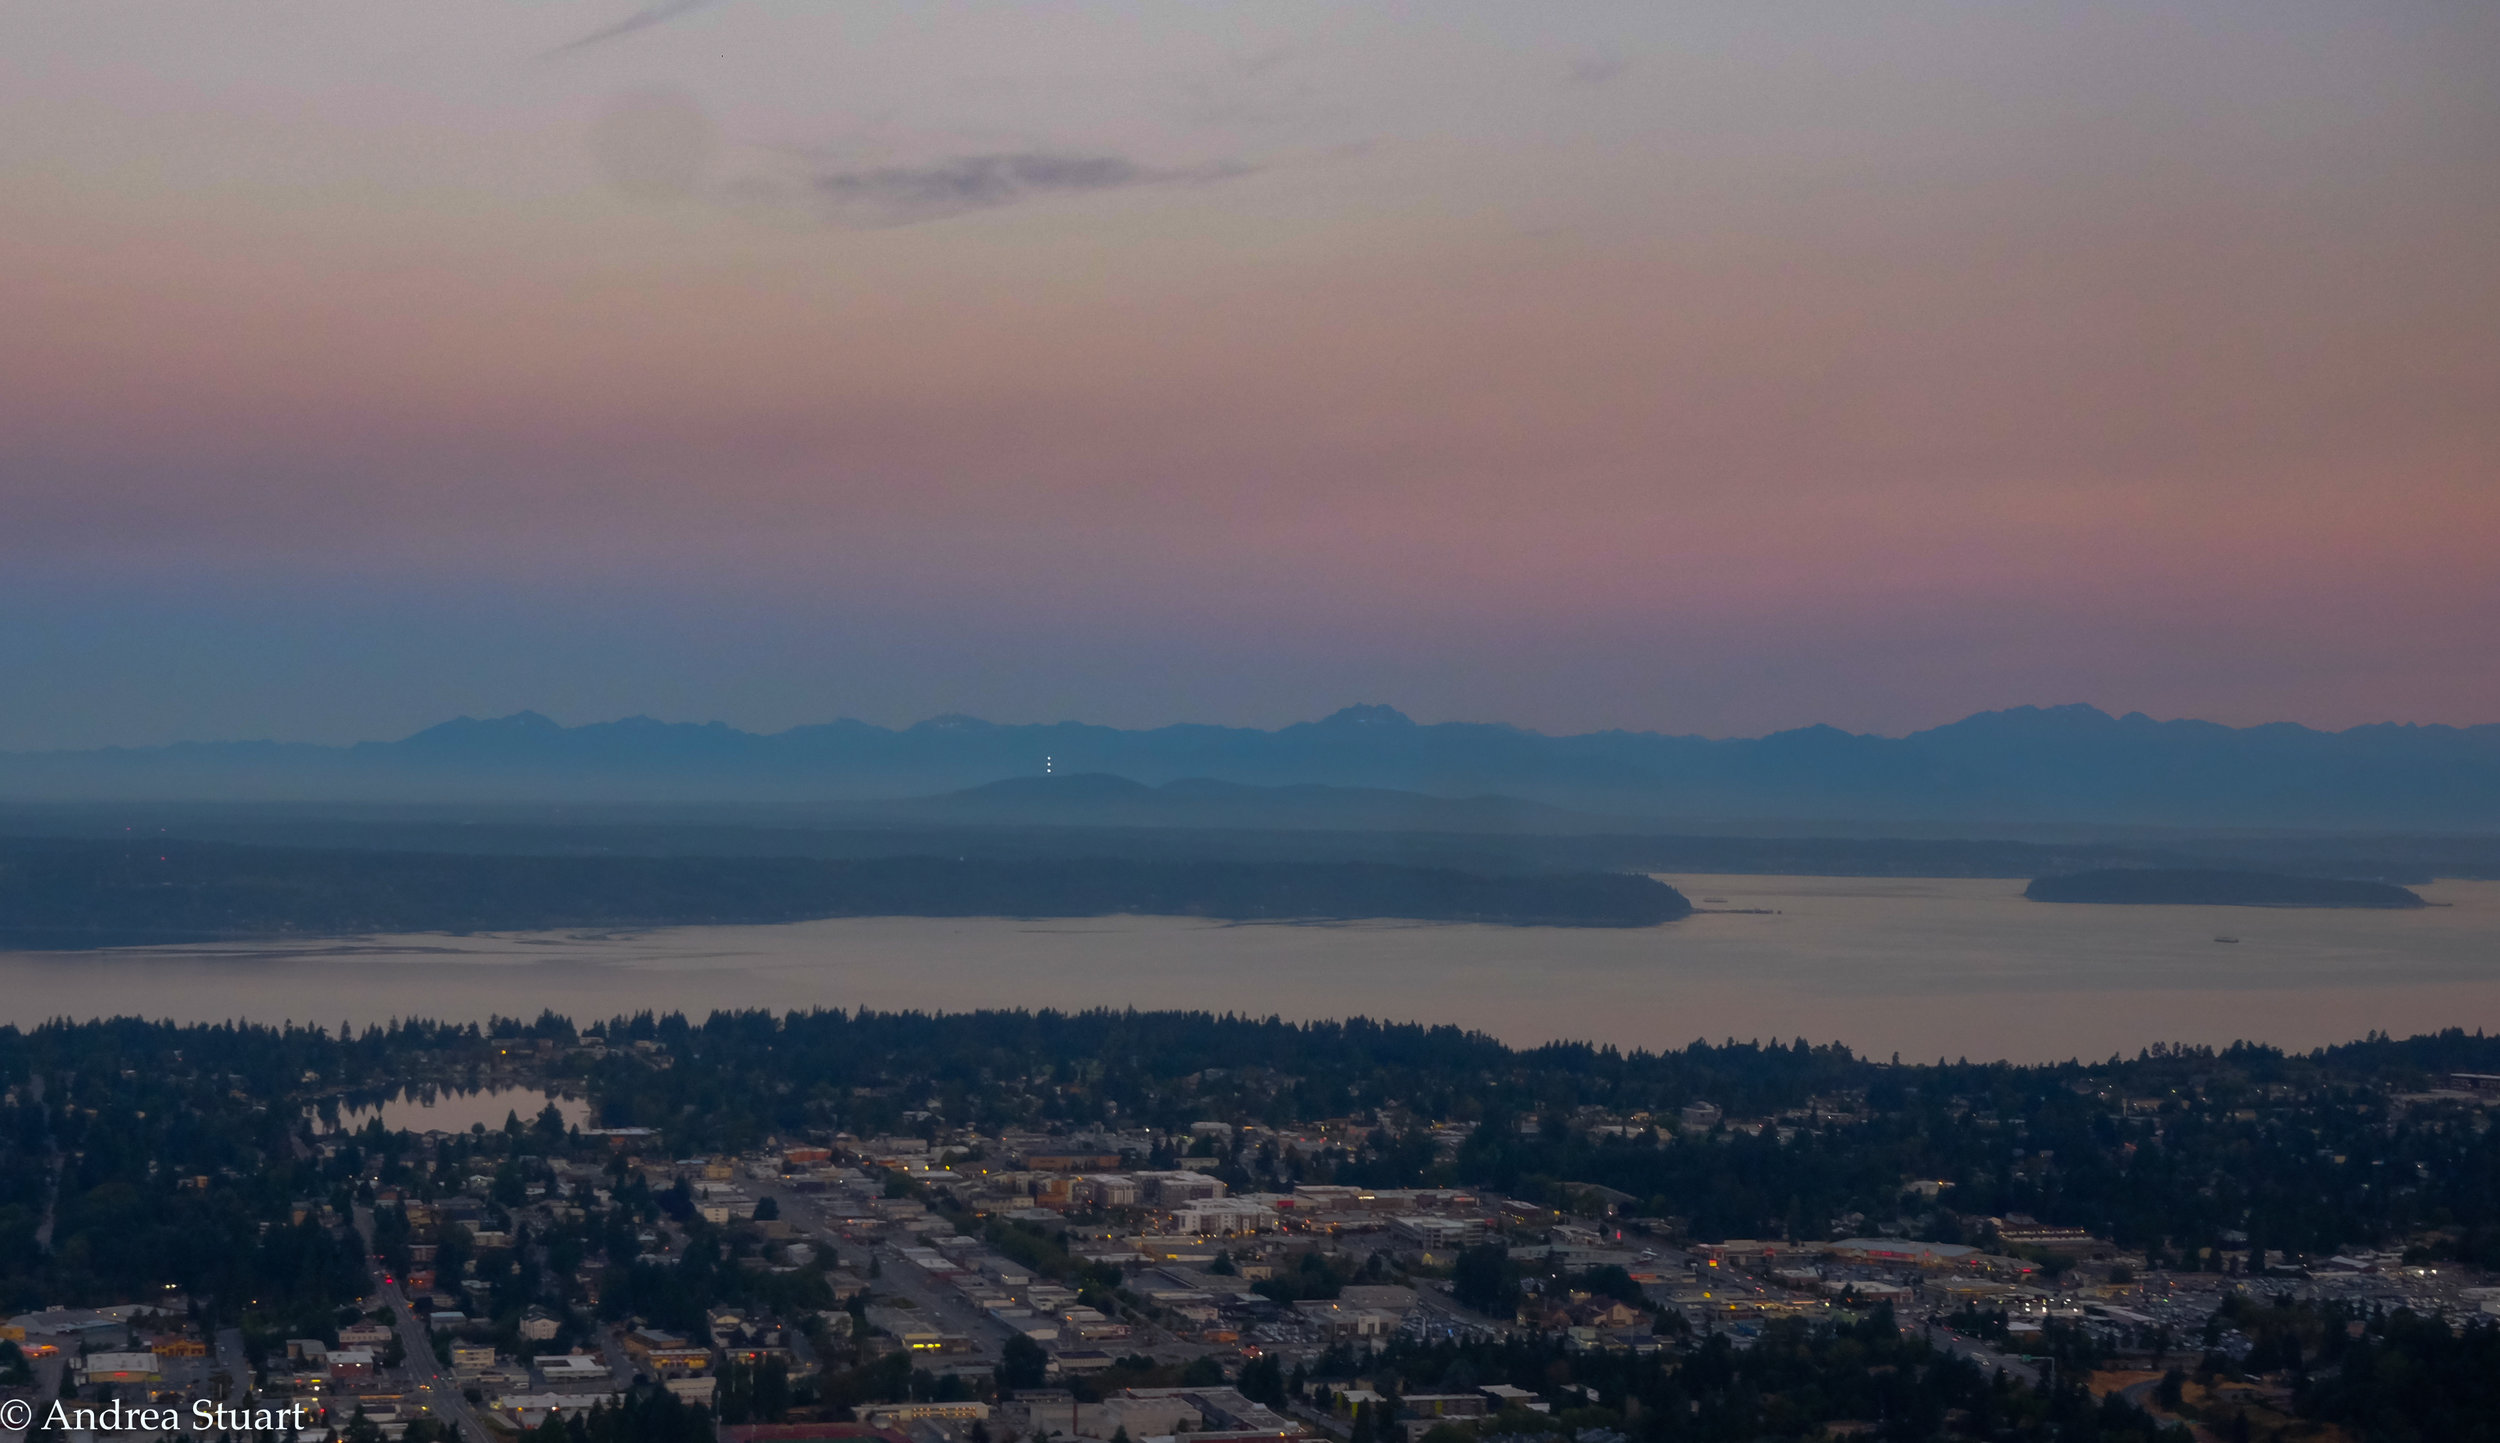 Seattle twilight